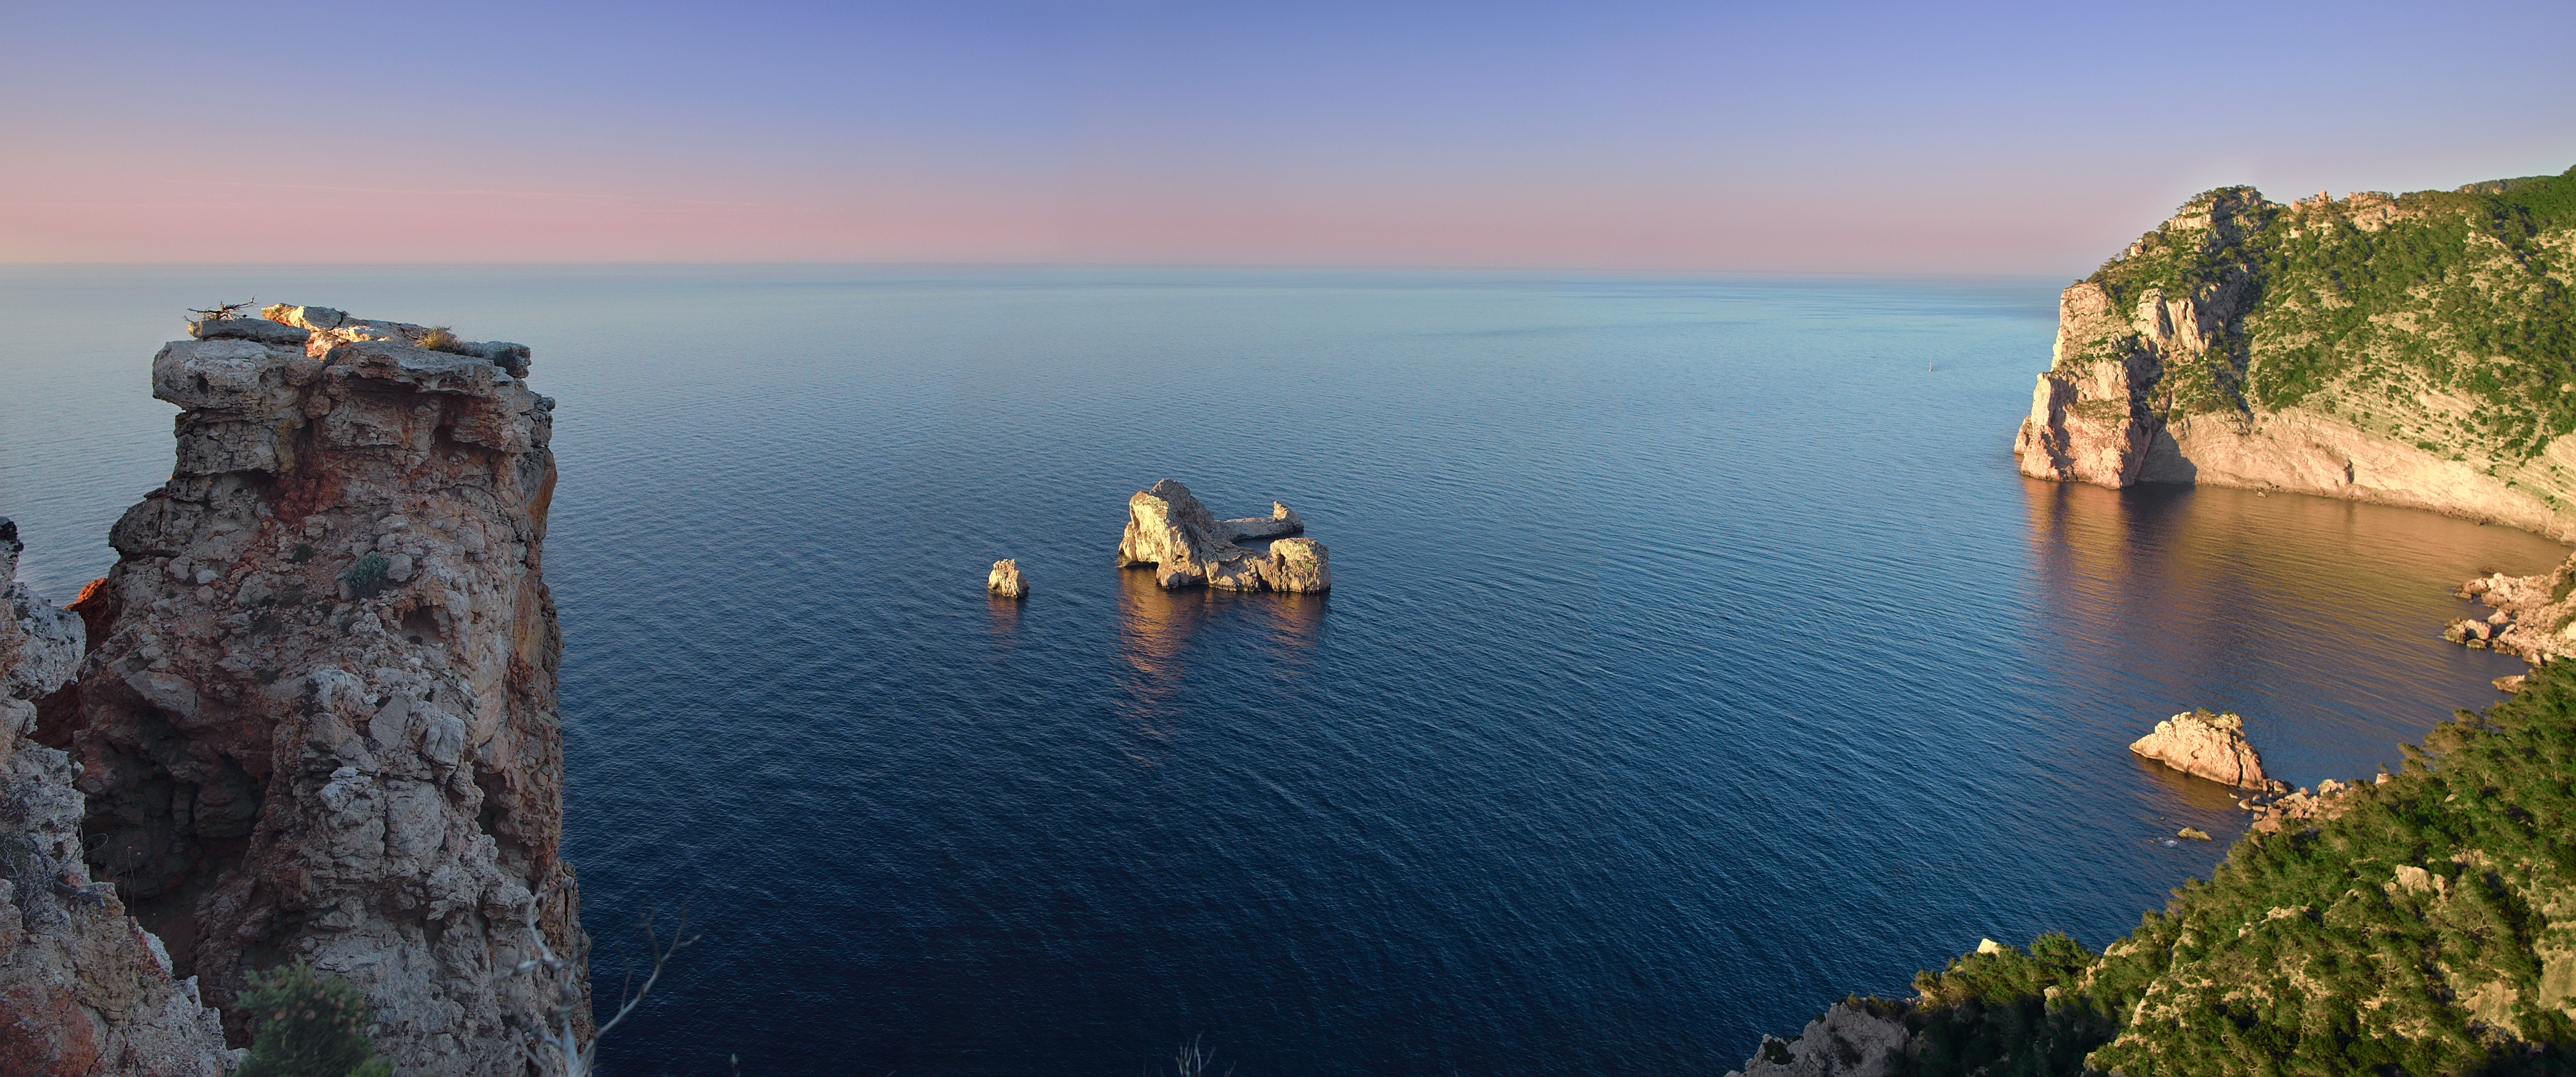 Tranquilidad y relax en el norte de Ibiza: Las ventajas de esta bella región 